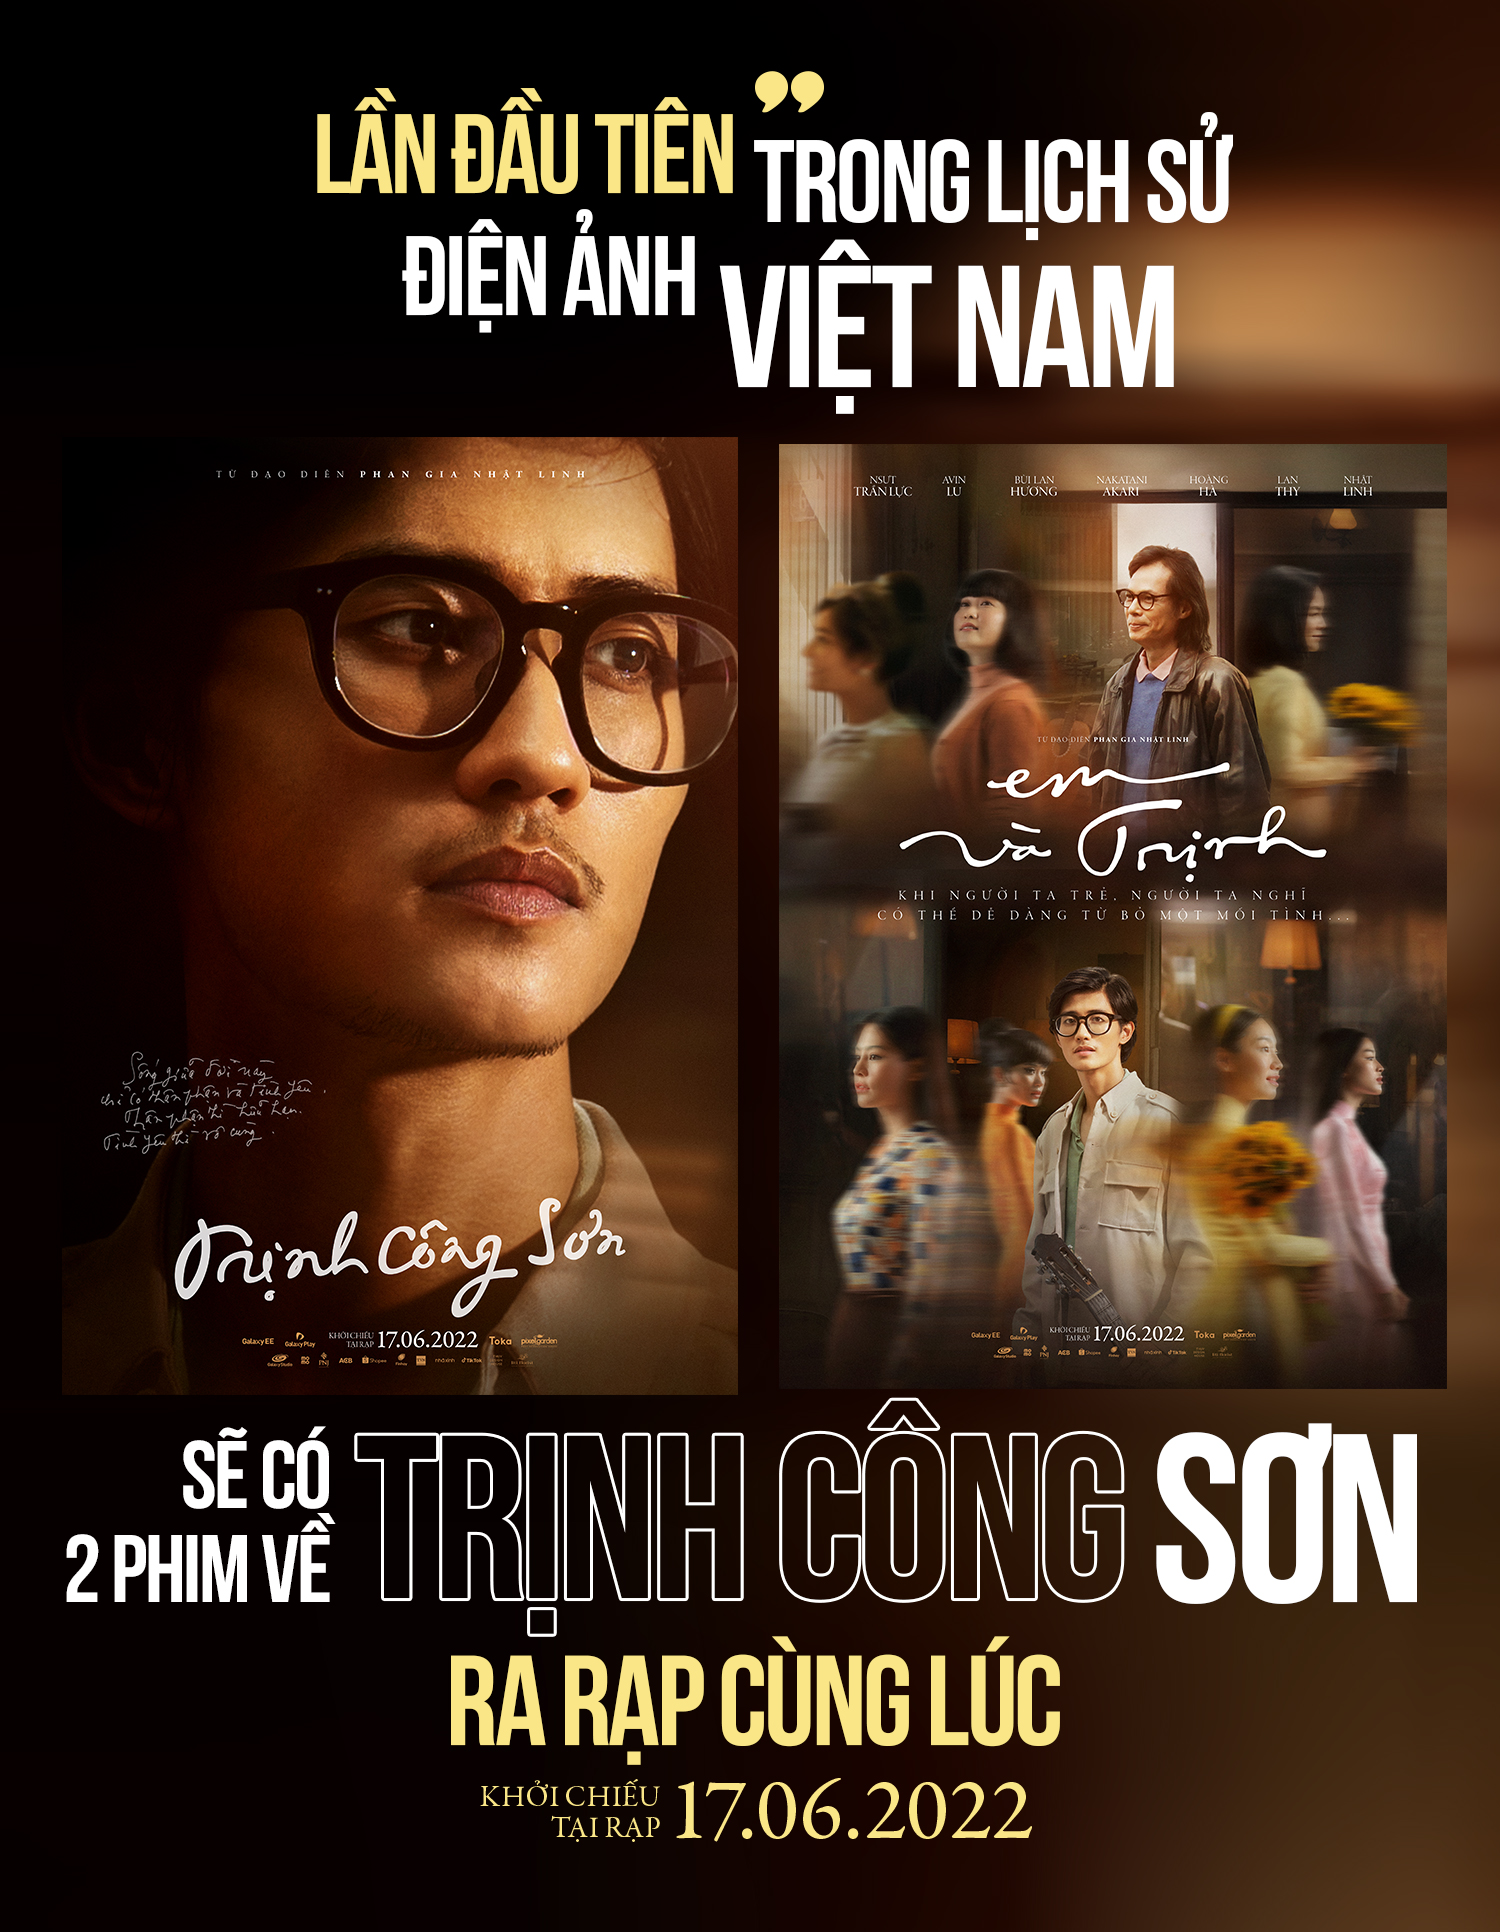 Nhà sản xuất 'Em và Trịnh' gây sốc với cú đúp ra mắt 2 phim điện ảnh về Trịnh Công Sơn cùng lúc - ảnh 2